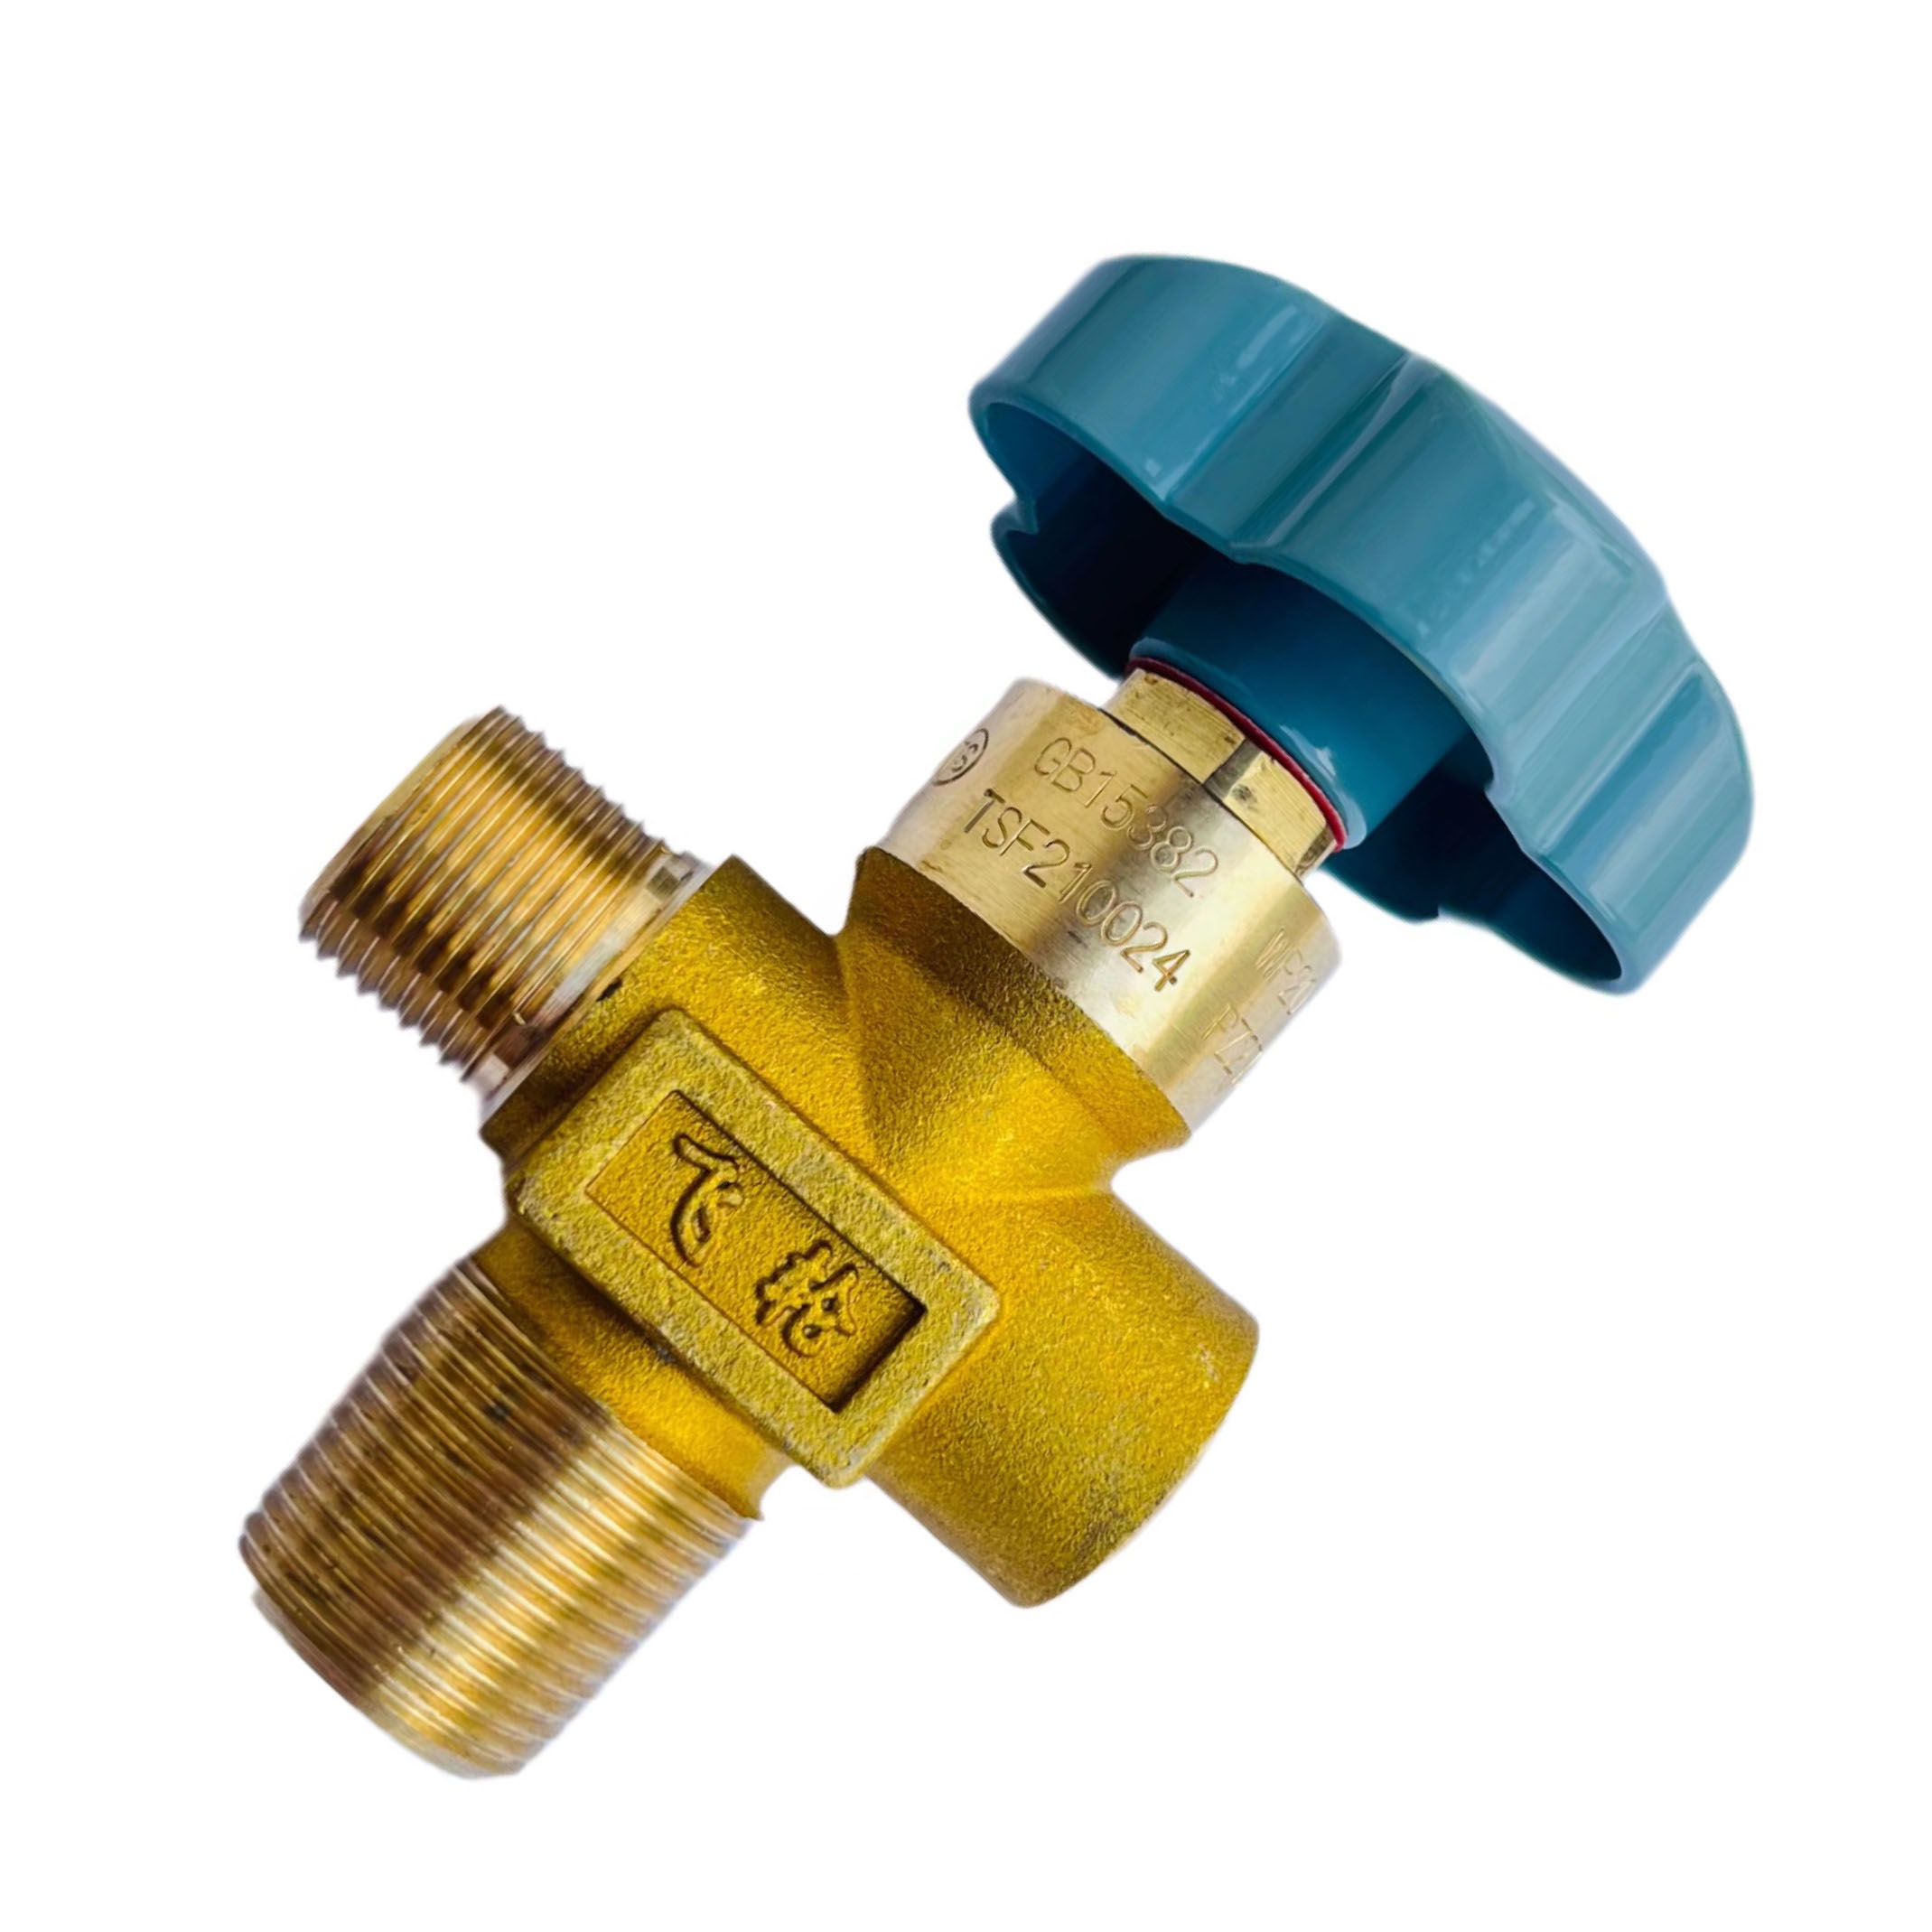 Válvula de presión residual del cilindro de oxígeno BYF-3 para función de retención de presión